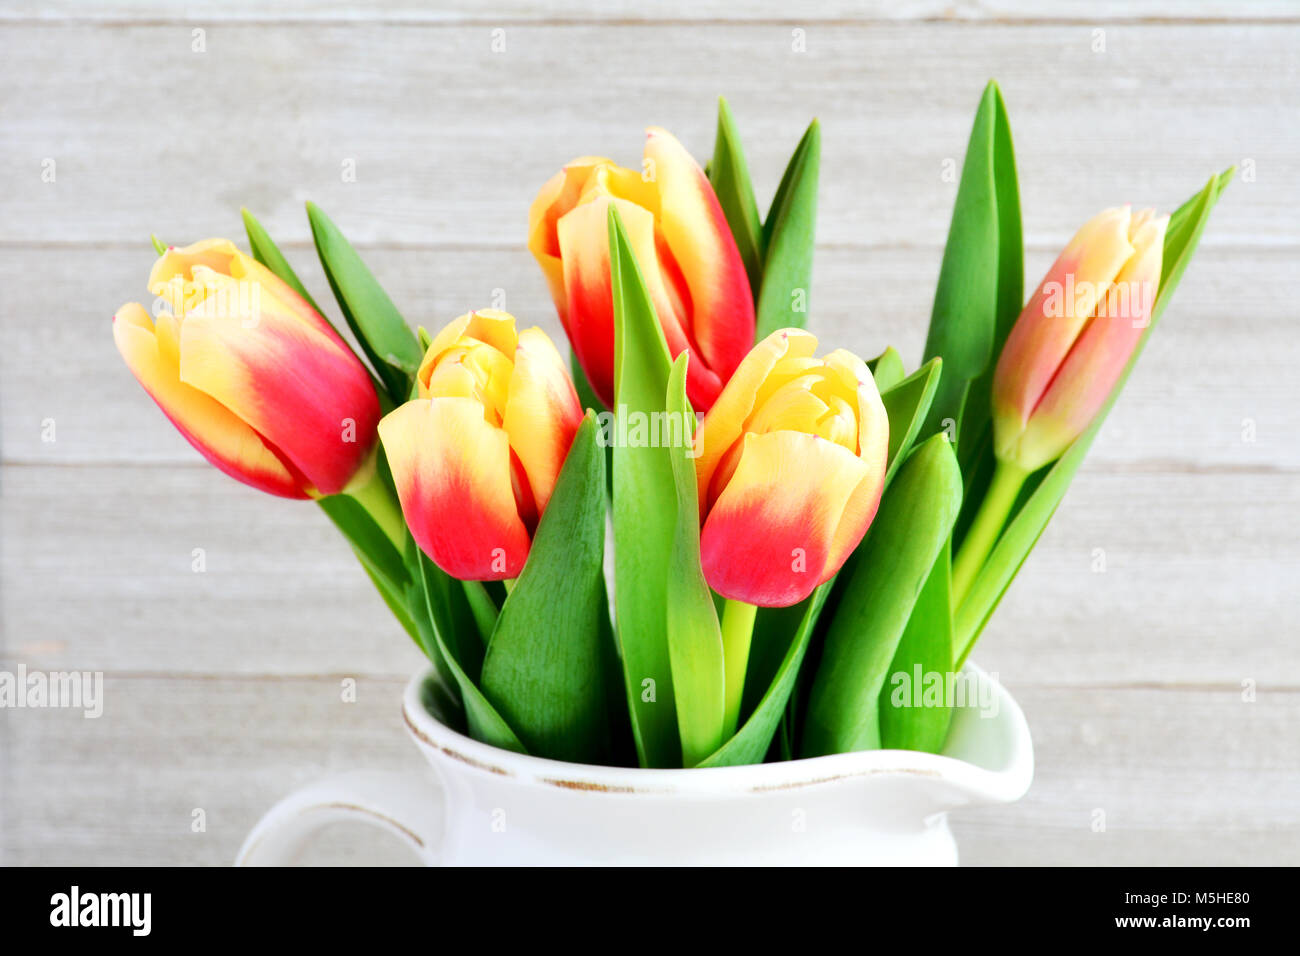 Tulipes rouges et jaunes libre en format horizontal et tourné en lumière naturelle Banque D'Images